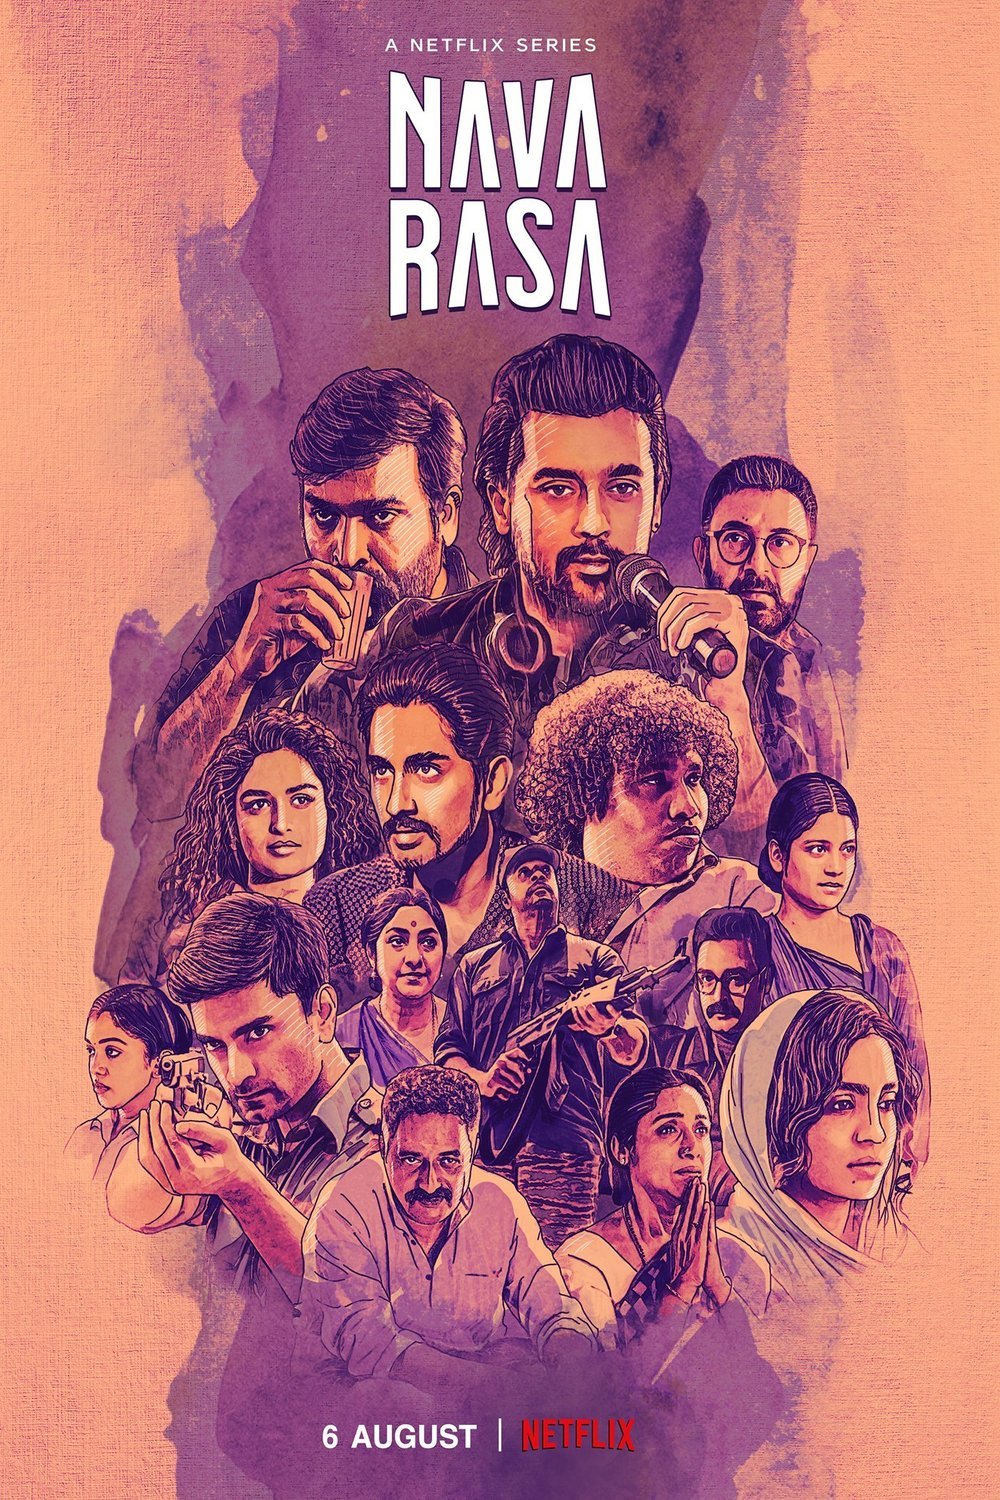 Tamil poster of the movie Navarasa